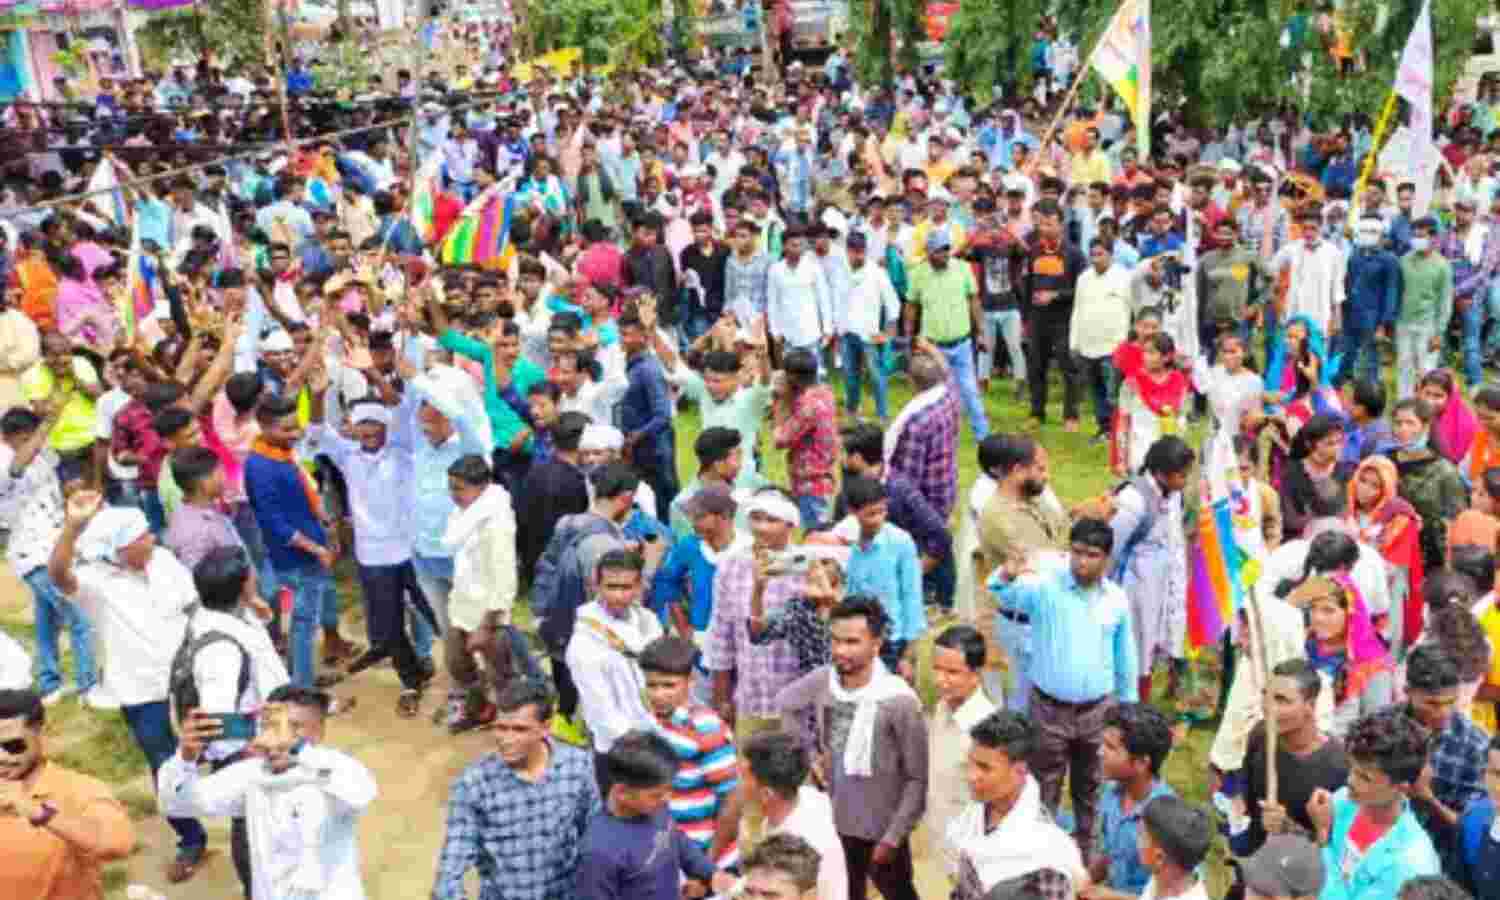 Chhattisgarh News : आरक्षण में कटौती पर आदिवासी समाज ने दी भूमकाल आंदोलन की चेतावनी, बोले - मांग पूरी नहीं होगी तो सरकार के खिलाफ करेंगे उग्र प्रदर्शन